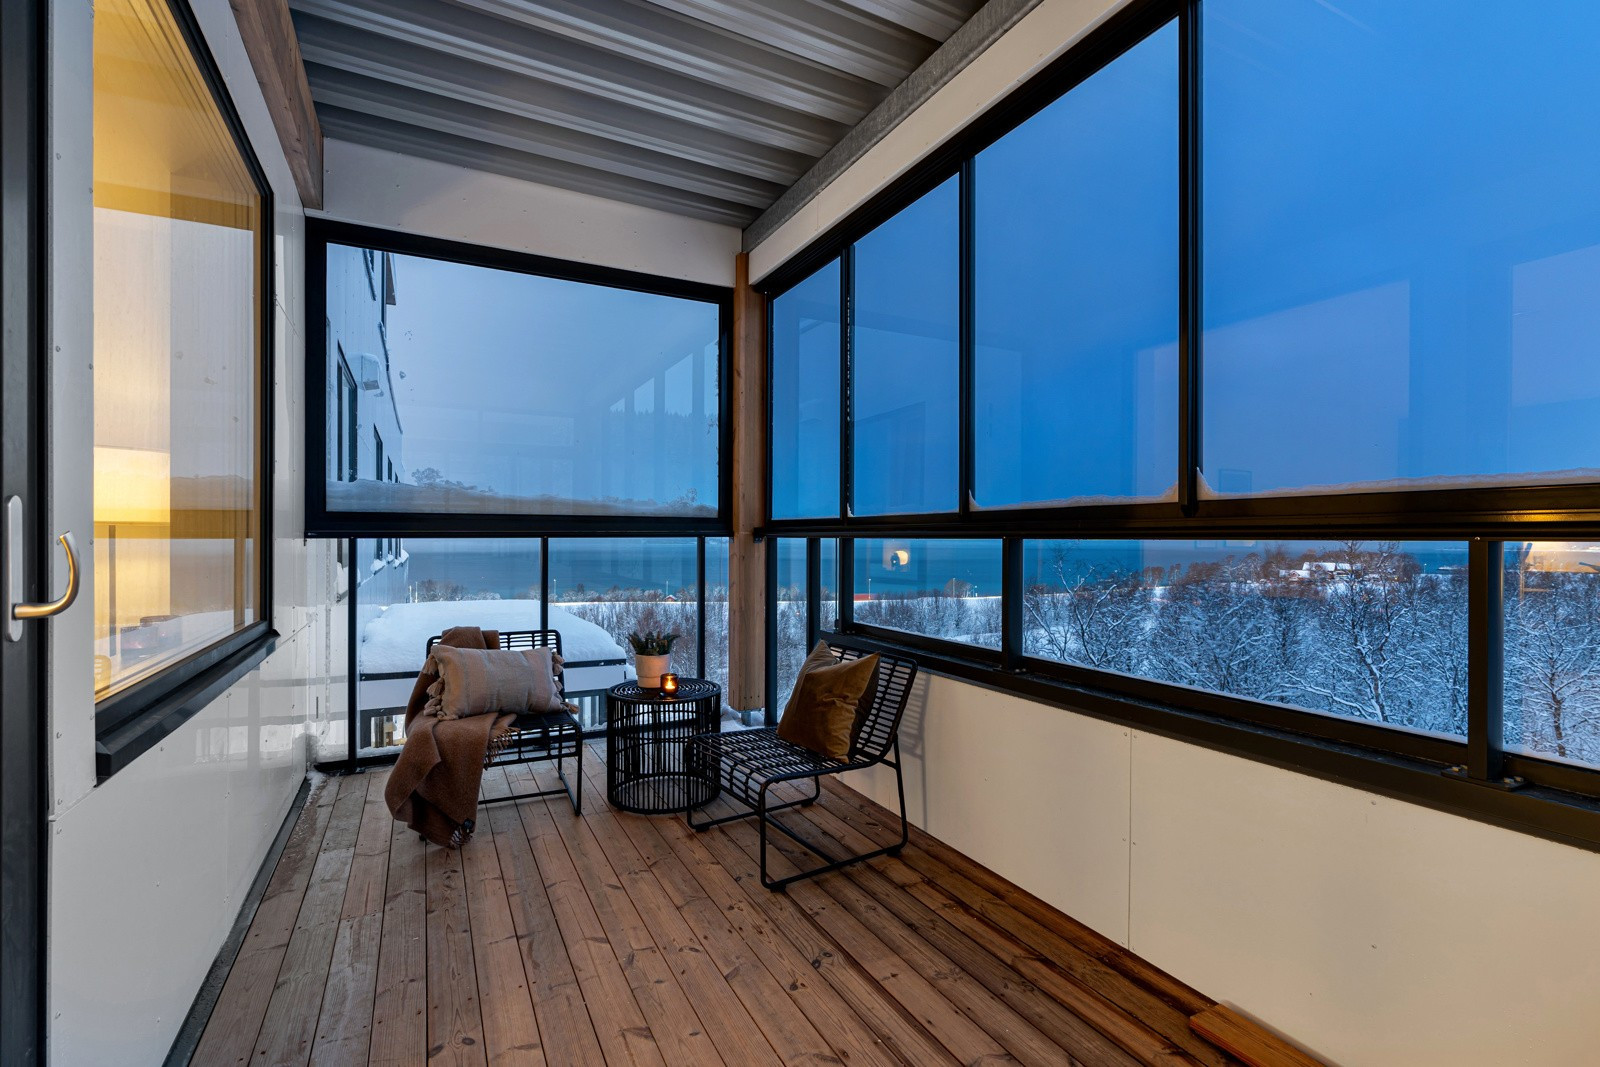 Nordvendt veranda med overbygg og herlige sol- og utsiktsforhold.